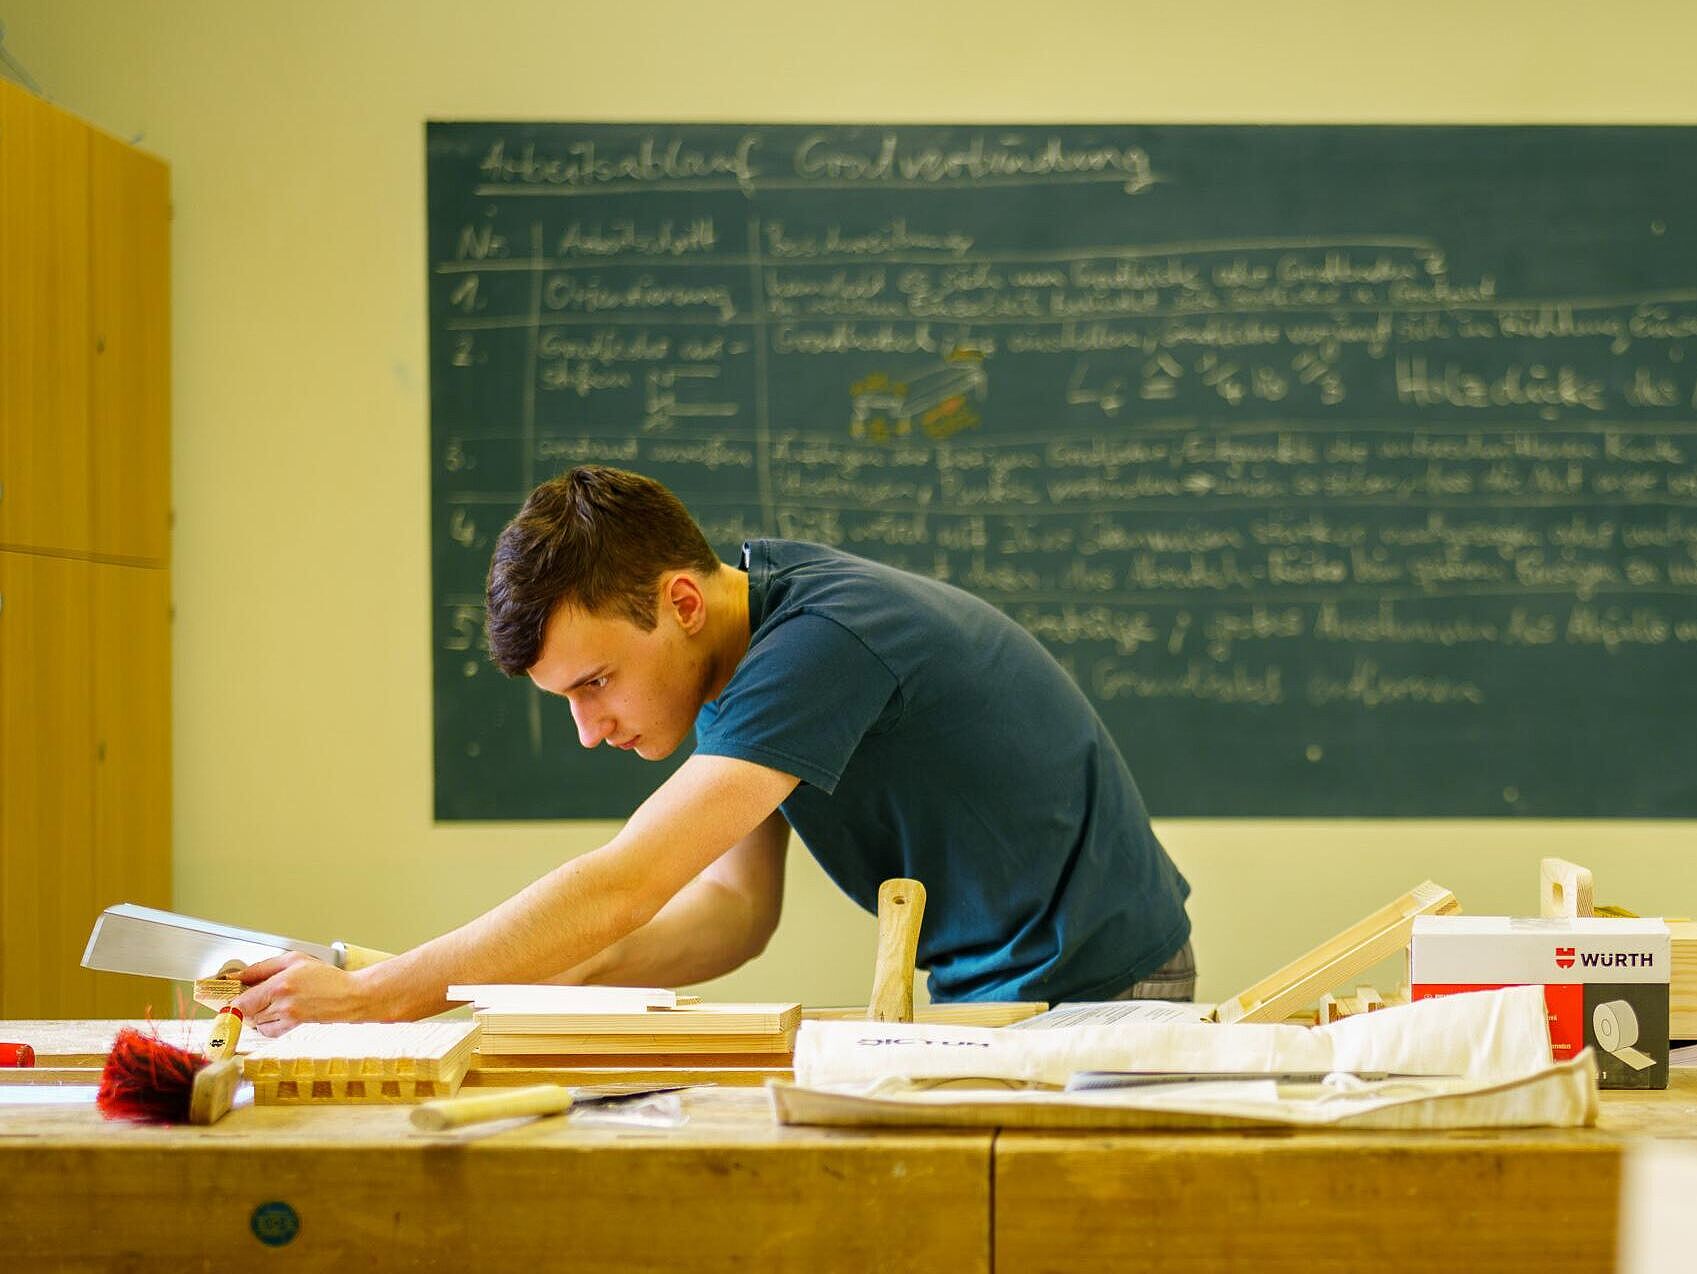 Eine Person arbeitet schleifend und prüfend an einer Werkbank in einem Tischlerraum, im Hintergrund eine voll geschriebene Unterrichtstafel.